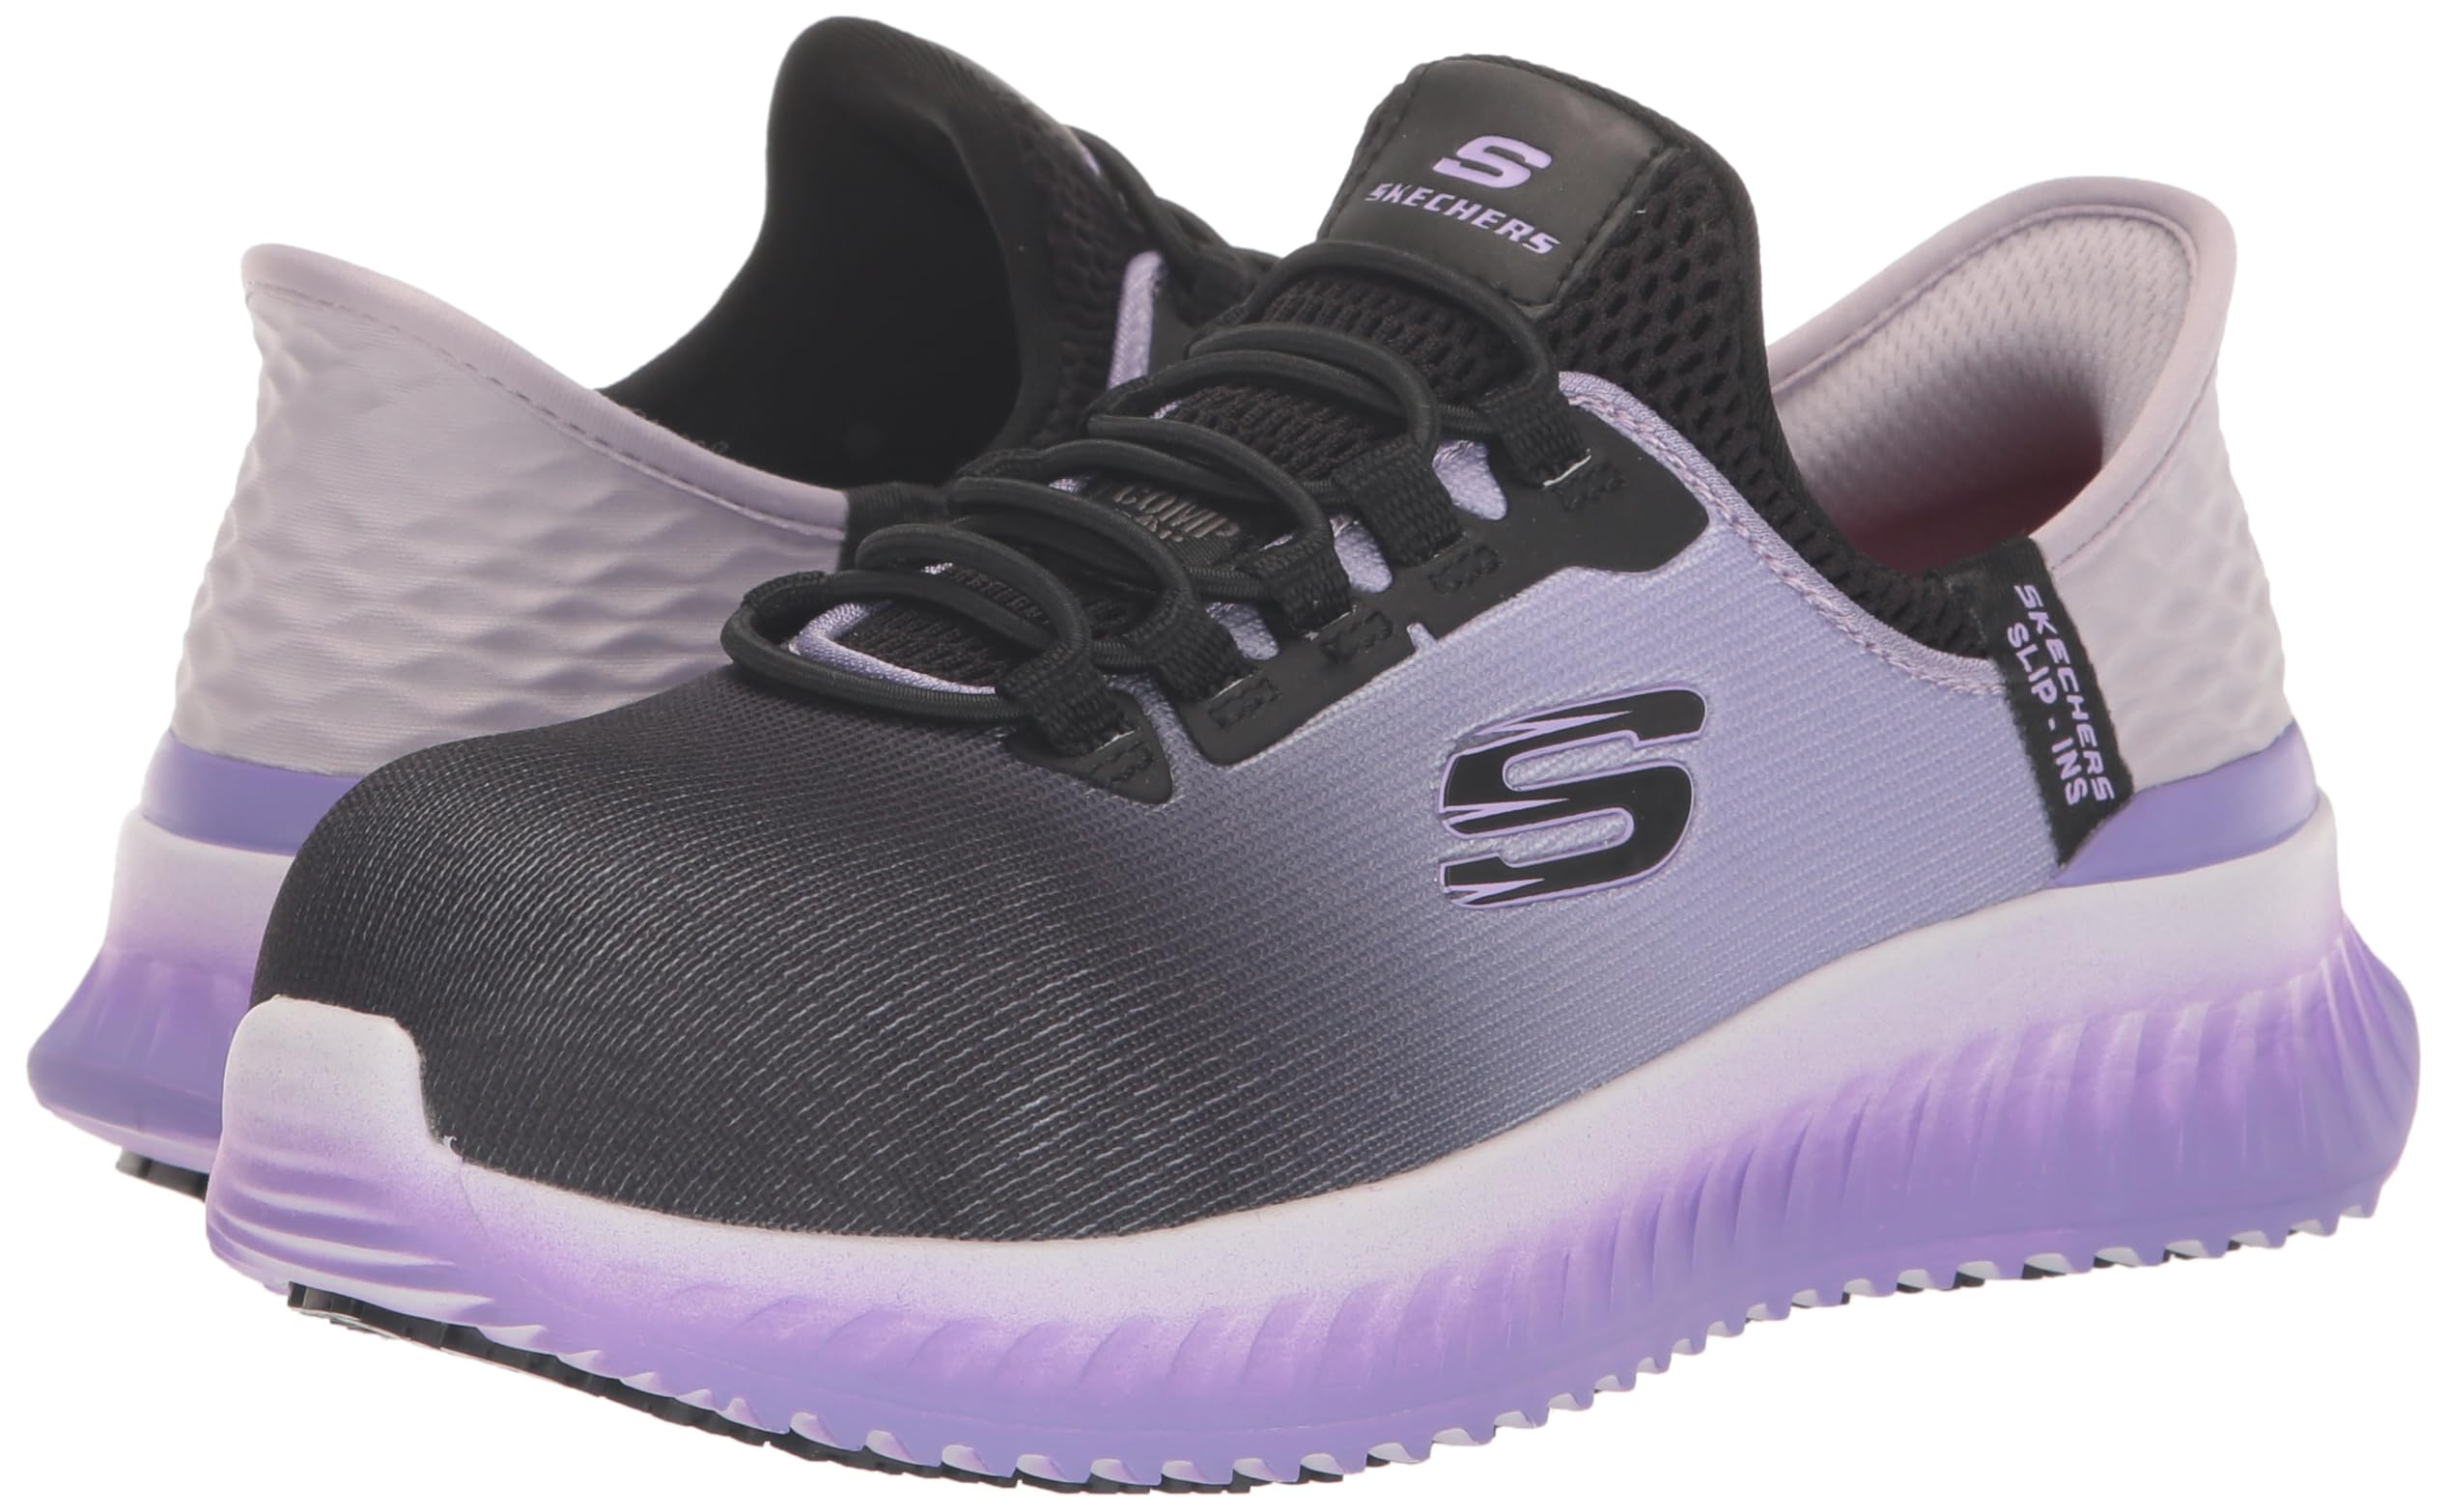 Skechers Women's Hands Free ins Work Tilido Ombray, Slip Resistant Comp Toe Industrial Shoe